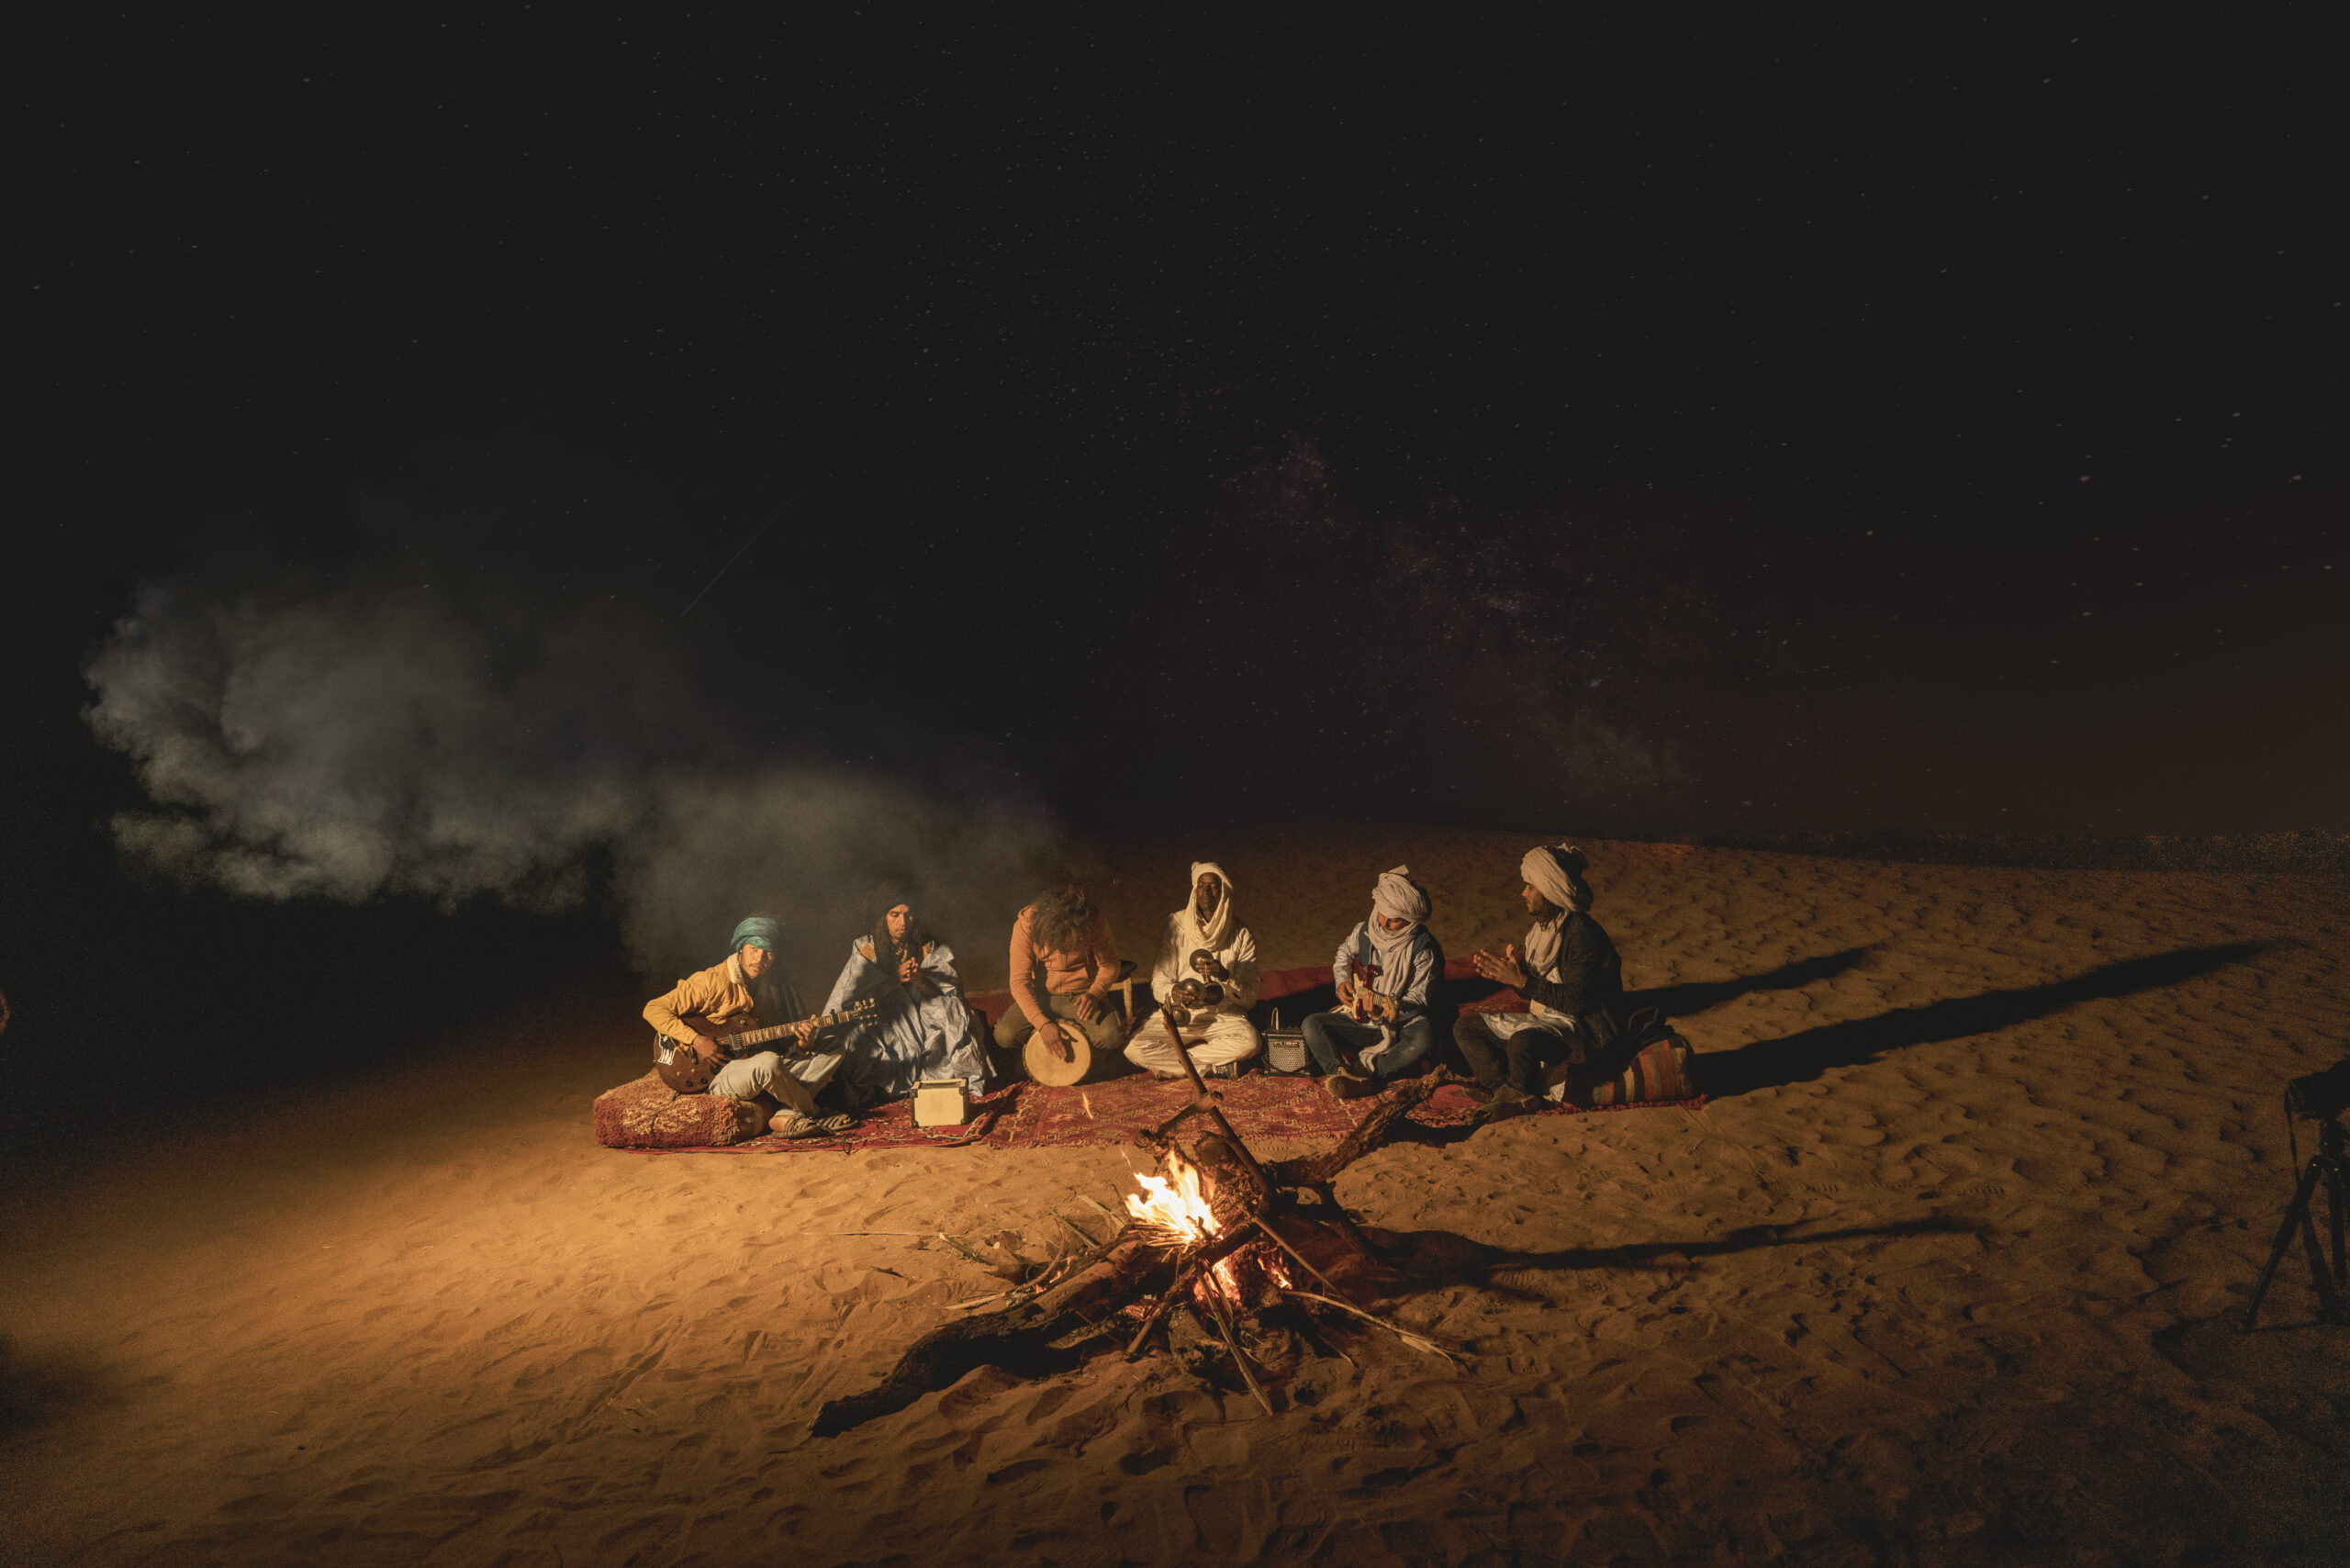 Nuit au désert de Mhamid